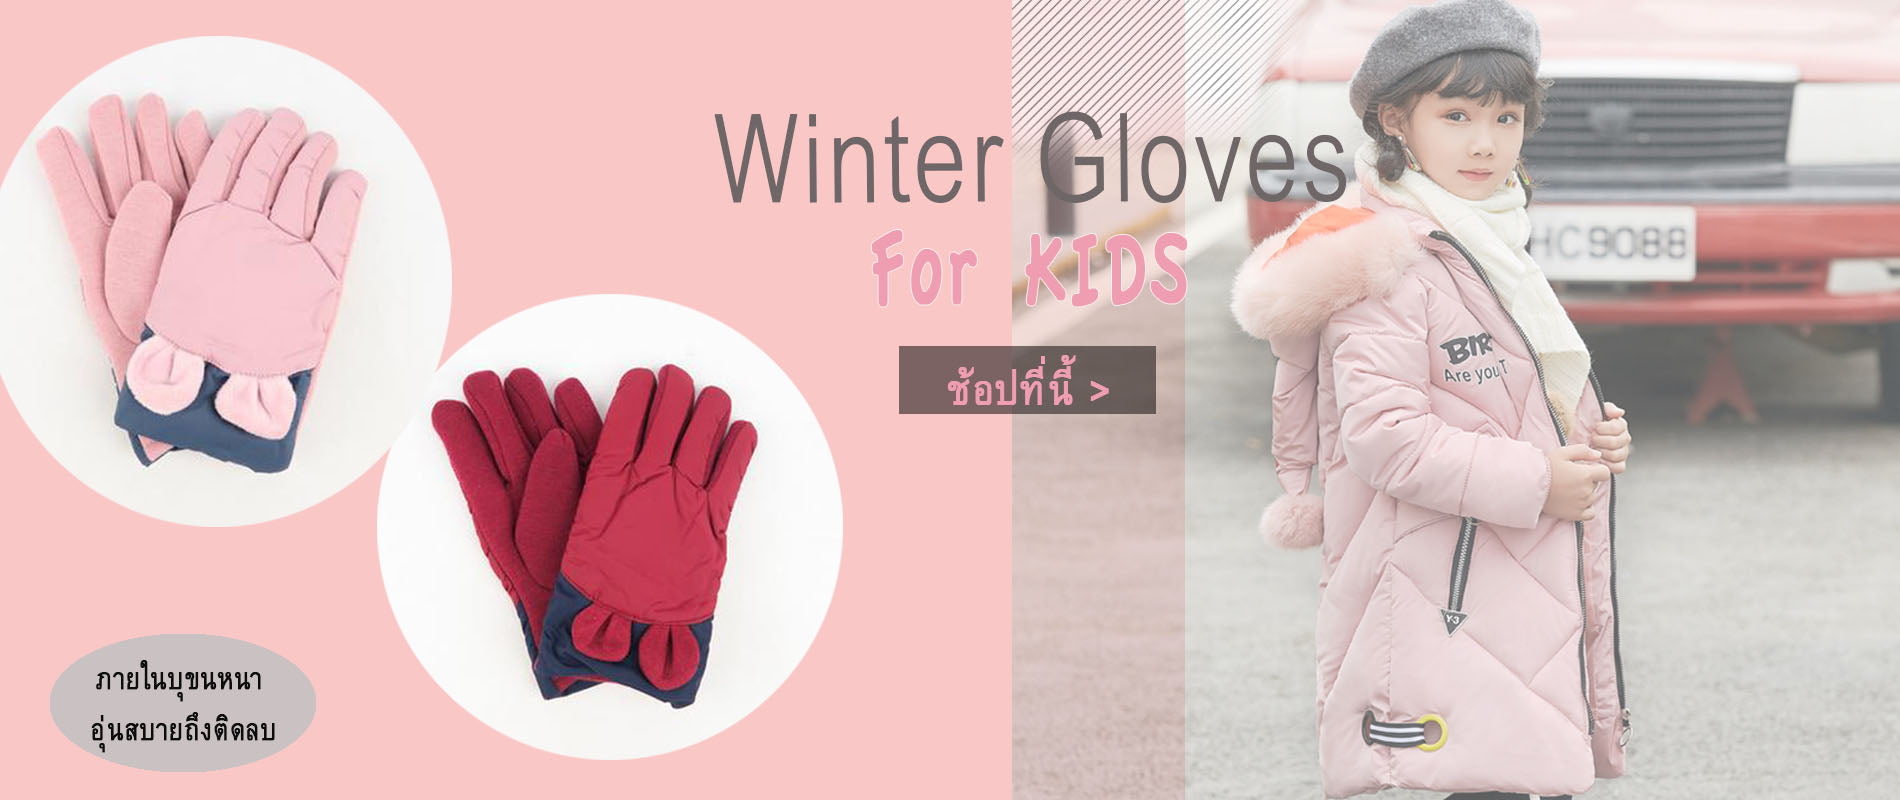 ถุงมือกันหนาวผ้าดาวน์บุขน กันหิมะ  -Button Touch Screen Phone Lined Thick Warmer Winter Gloves